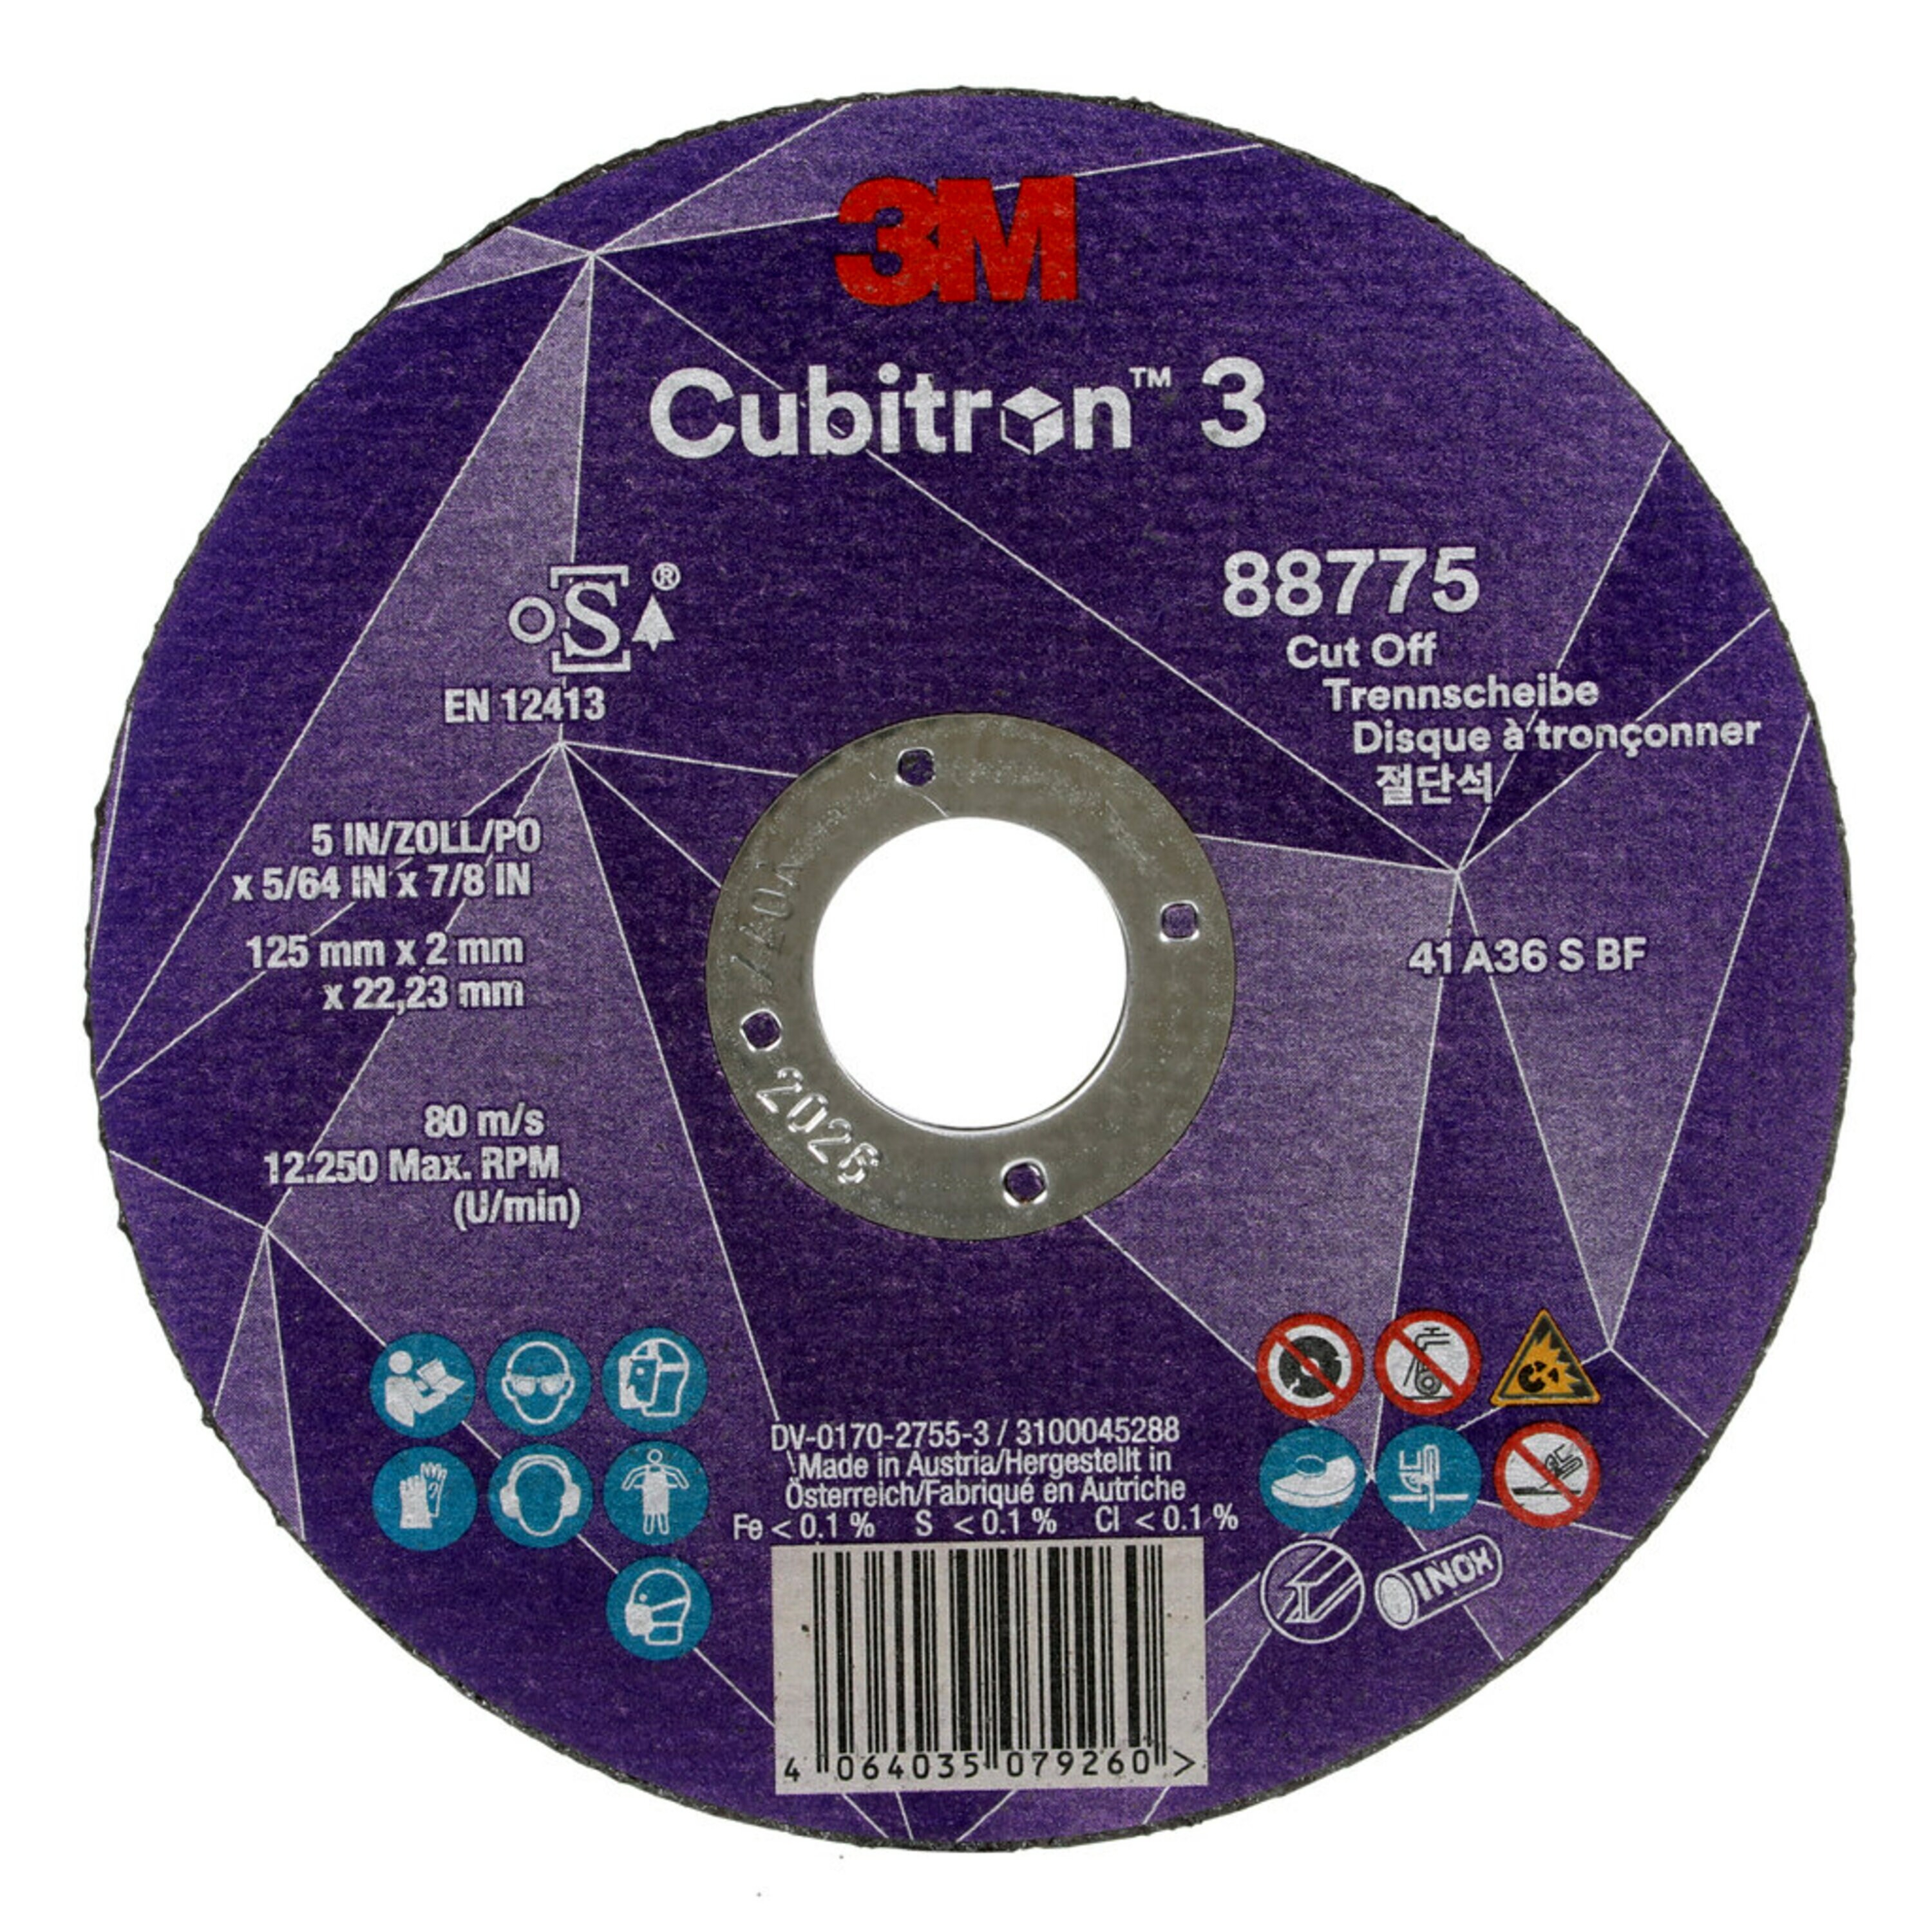 Disco de corte 3M Cubitron 3, 125 mm, 2 mm, 22,23 mm, 36+, tipo 41 #88775